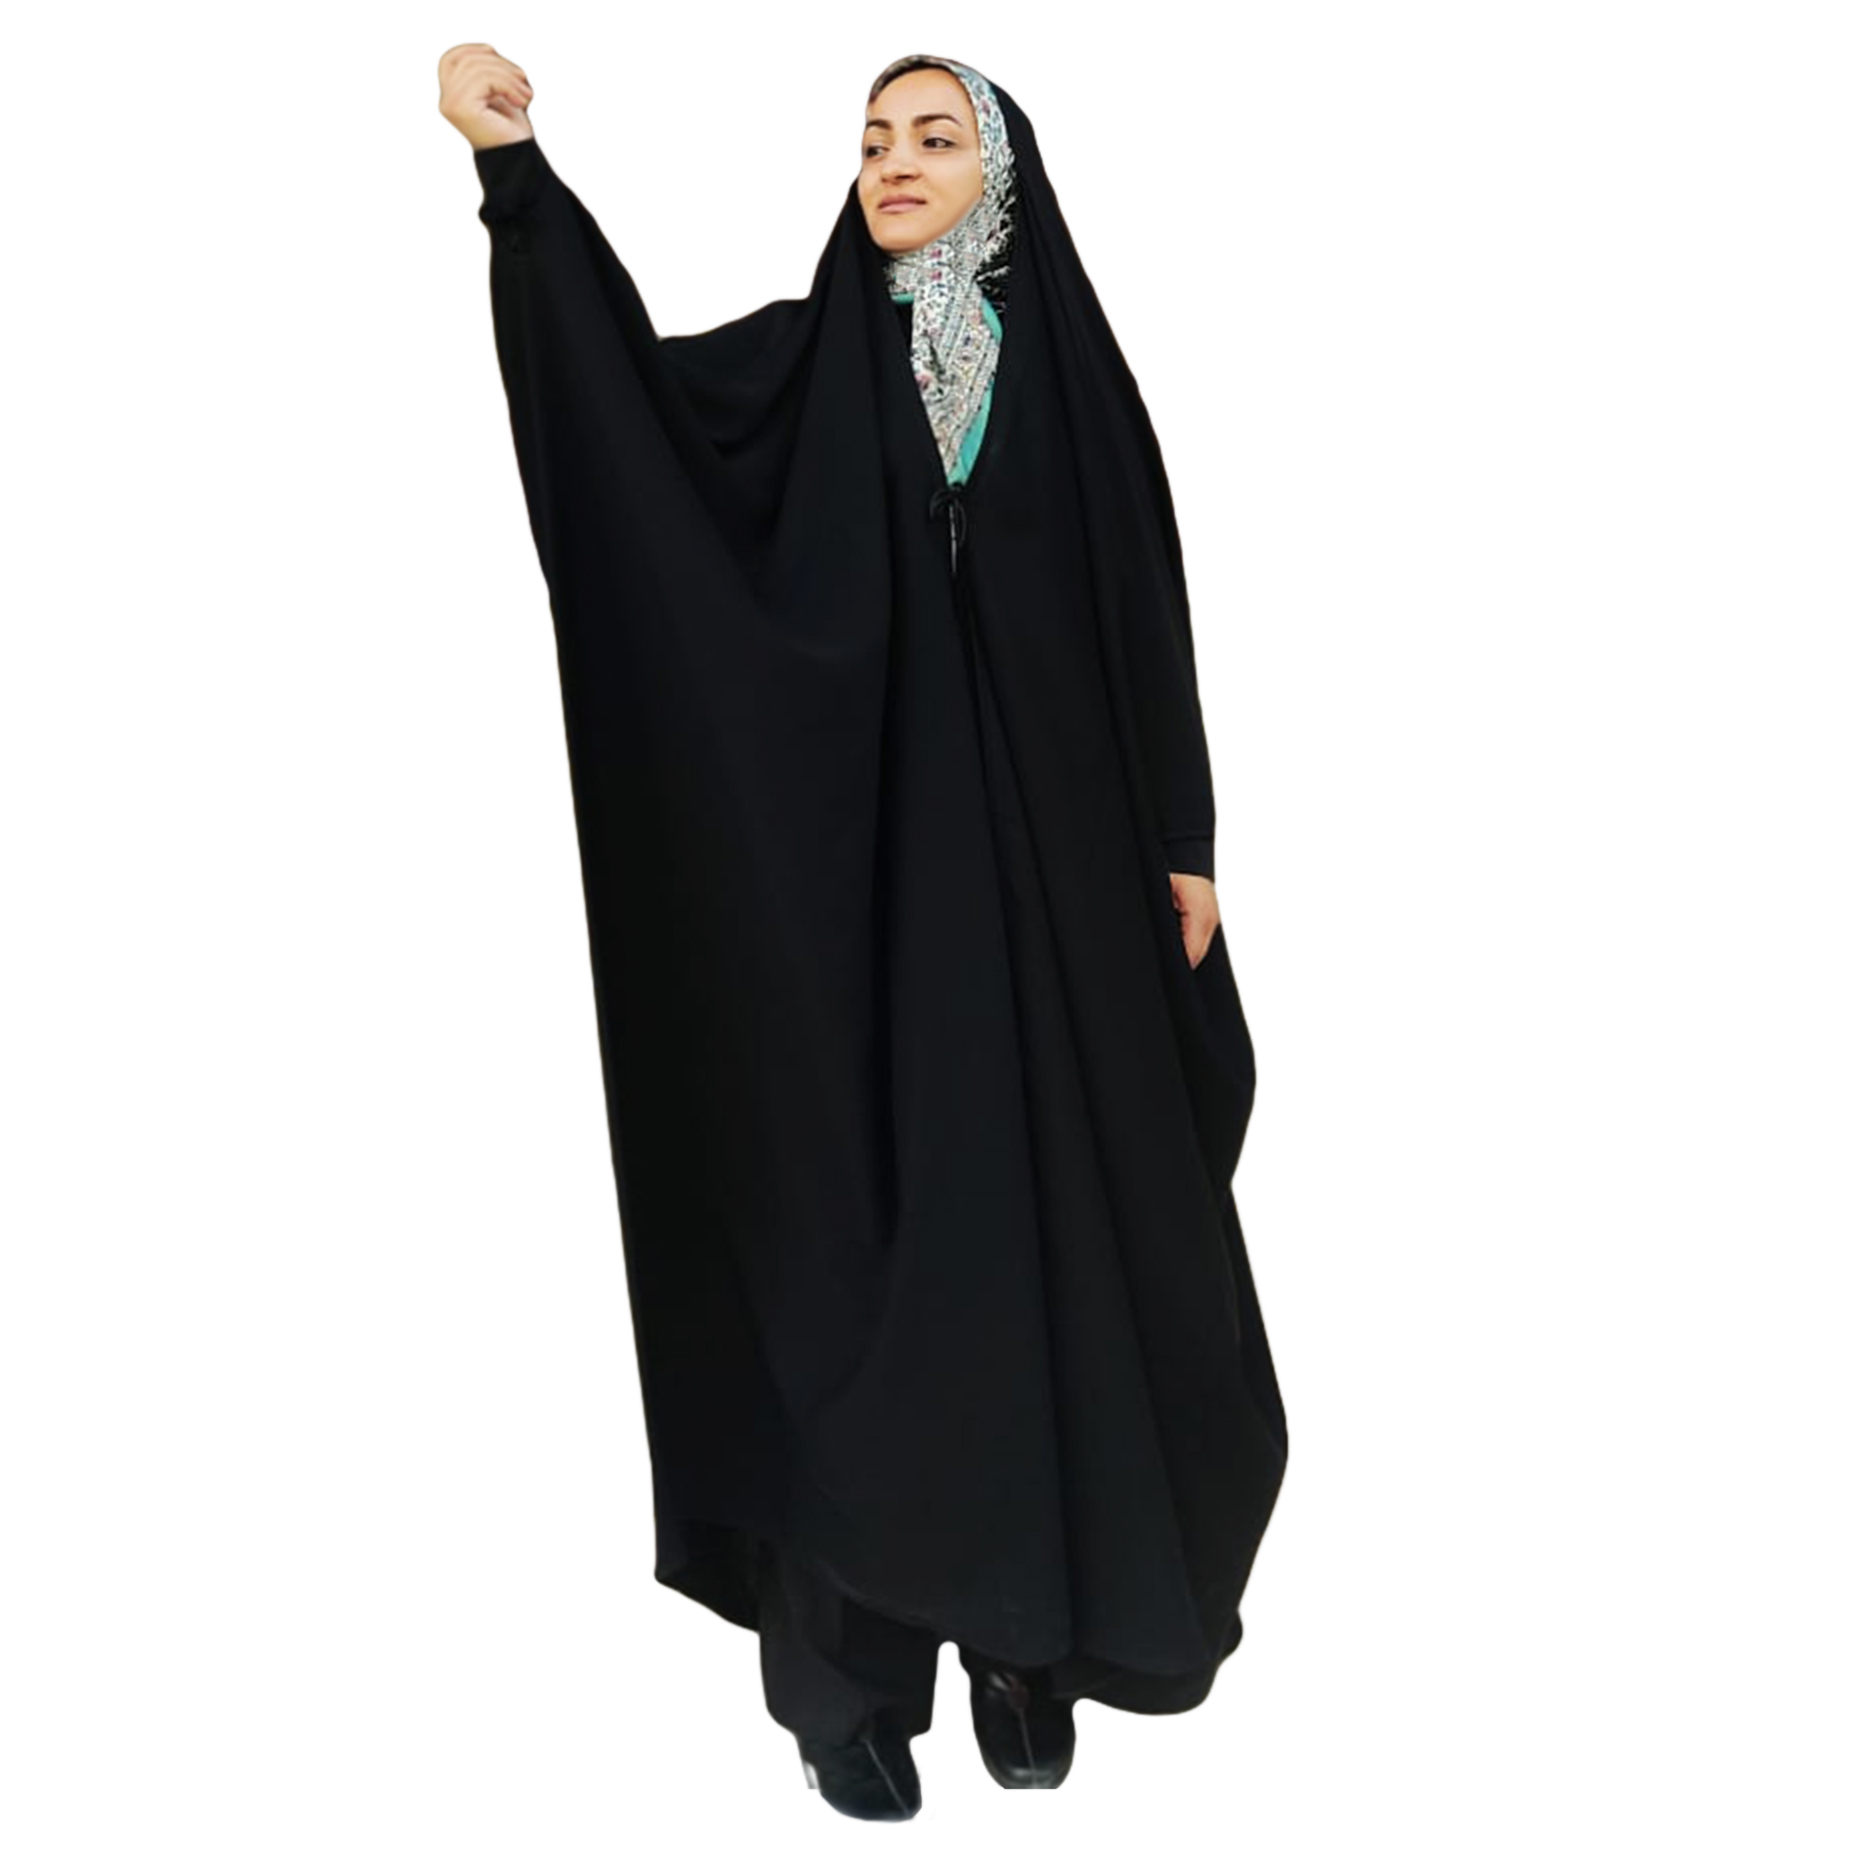 نکته خرید - قیمت روز چادر عربی حجاب نیکو مدل اصیل کرپ 5 ستاره خرید